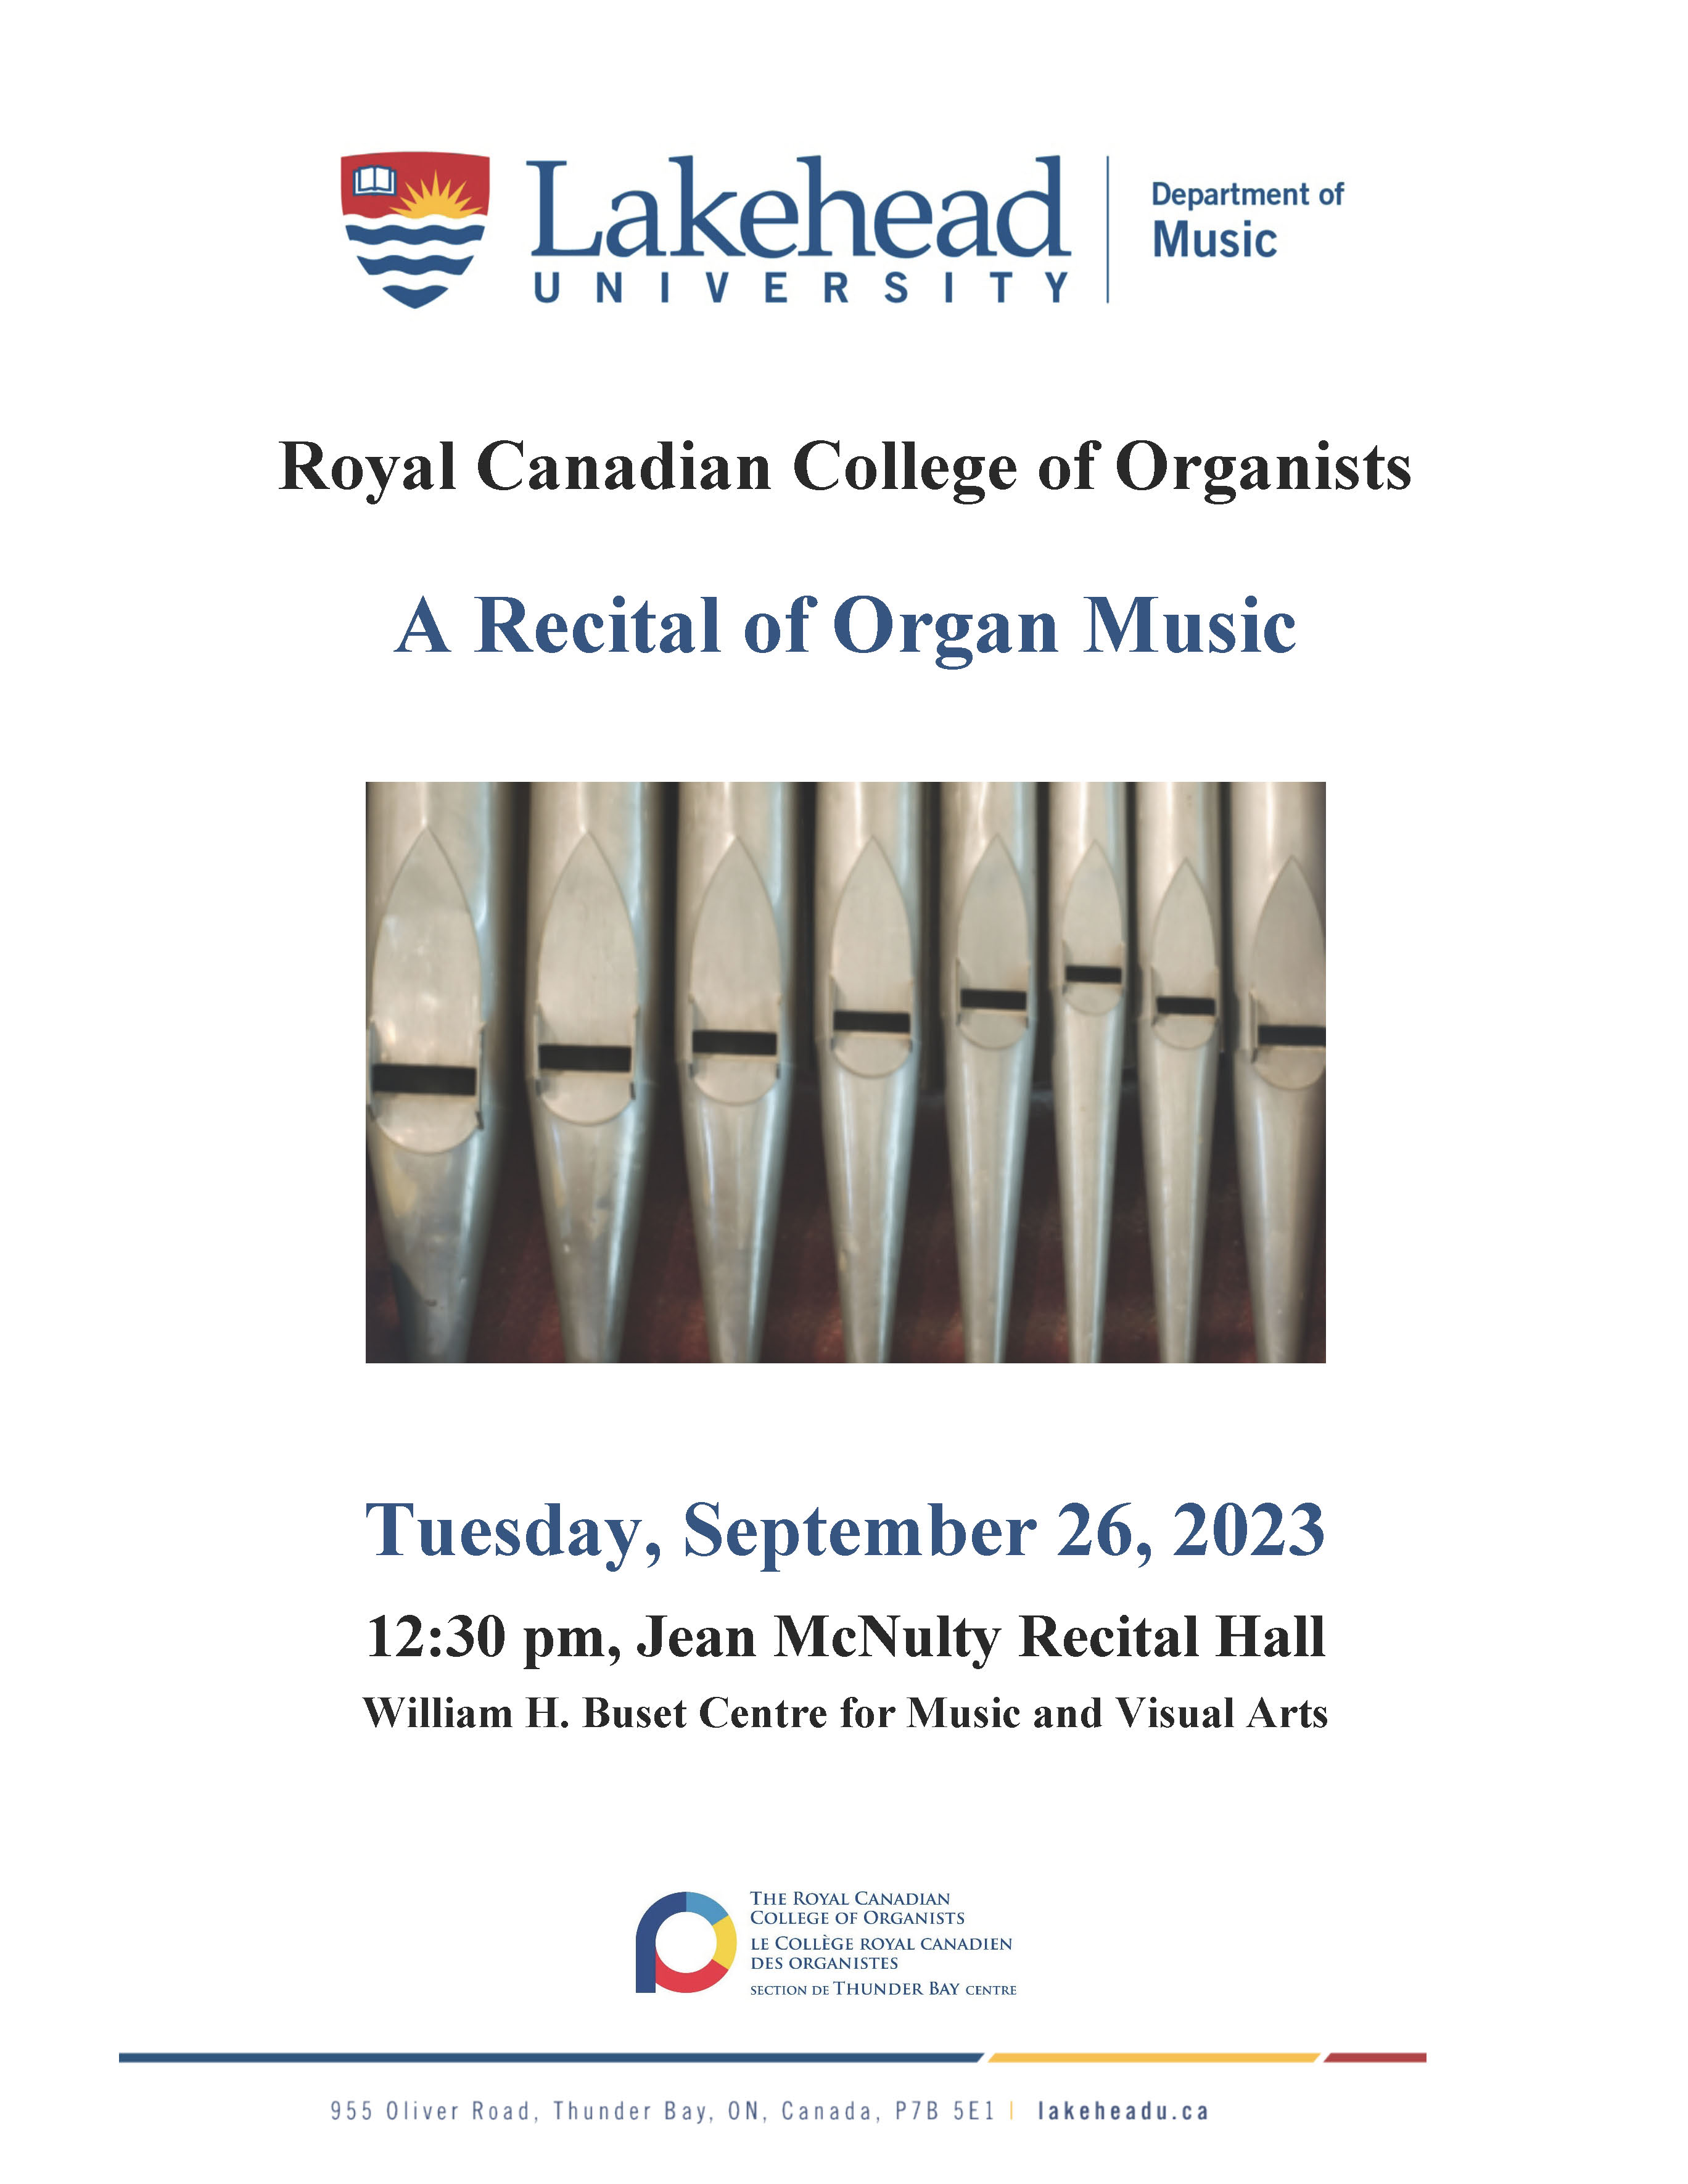 Organ Recital Poster